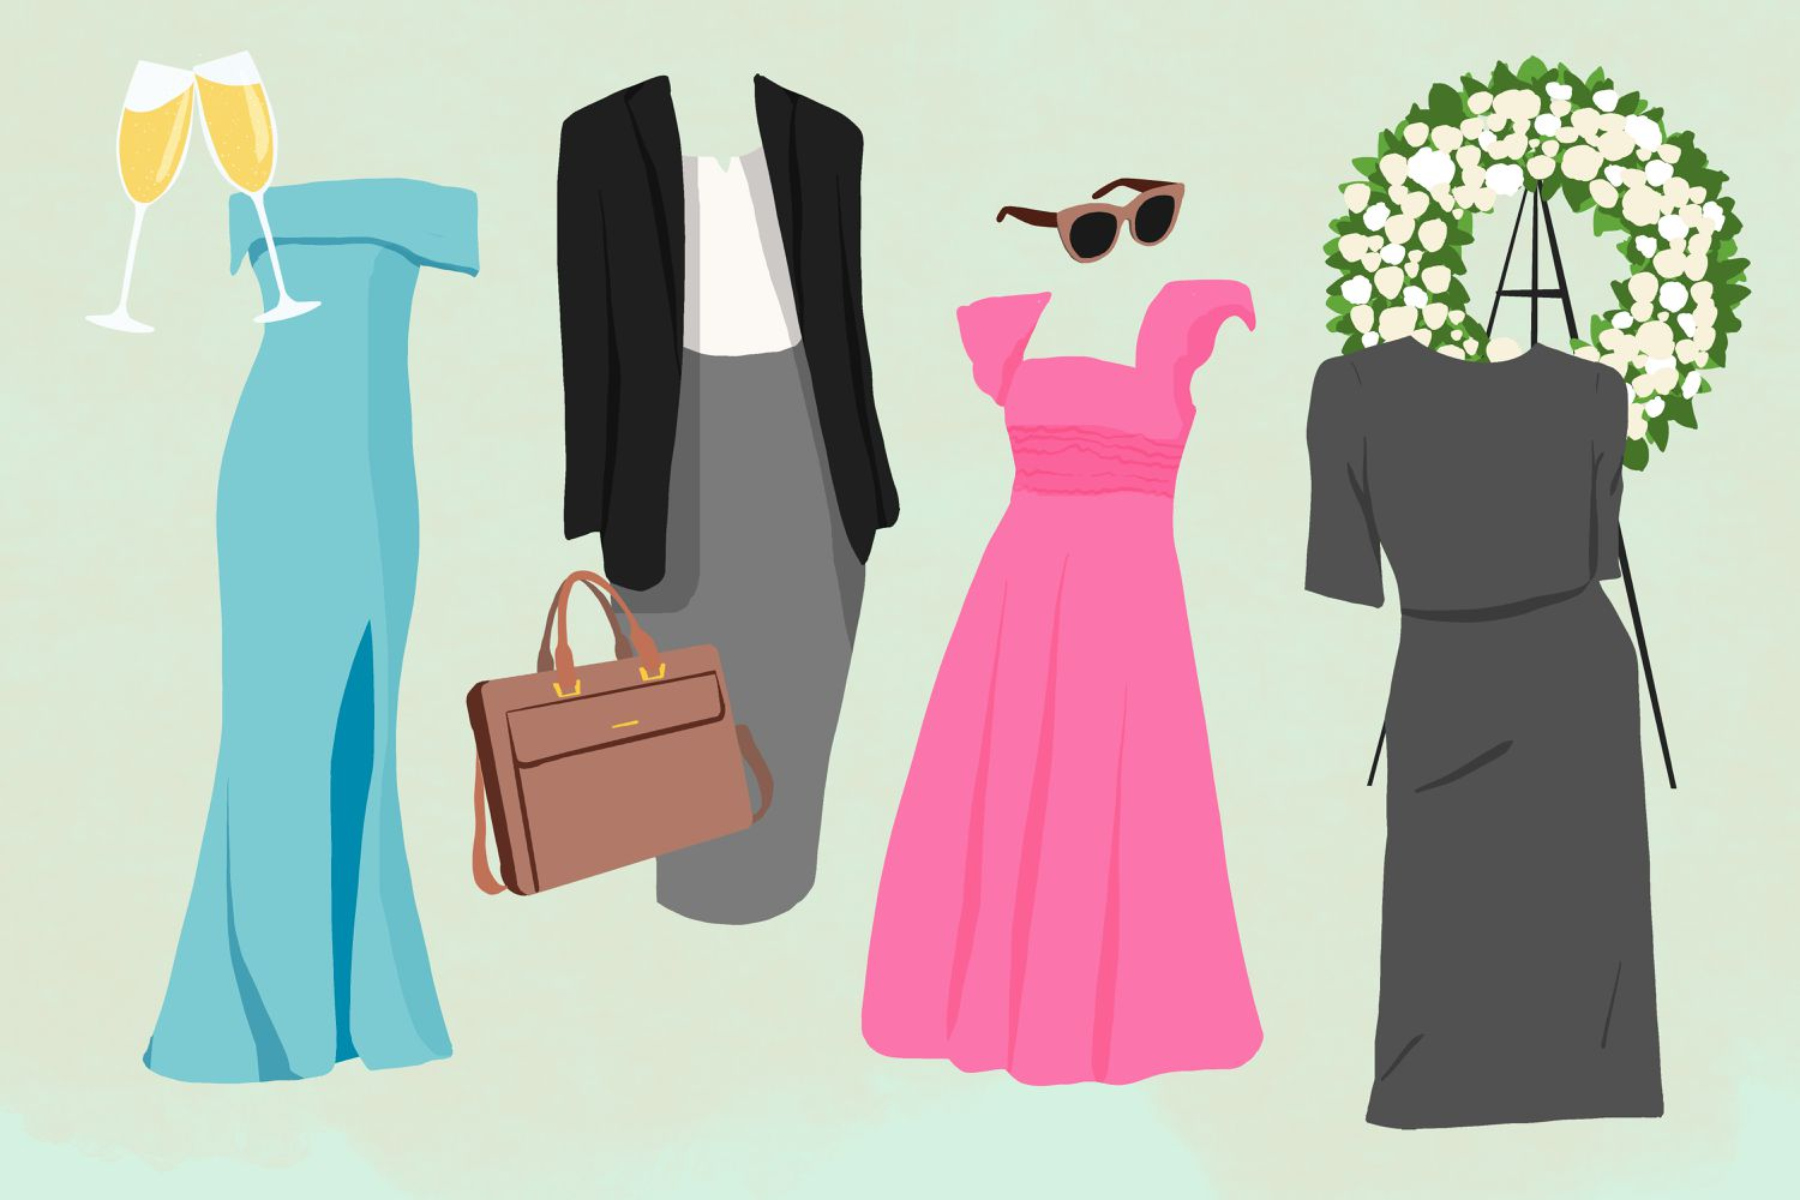 Ντύσιμο έξοδος: Πώς να δημιουργήσετε το τέλειο outfit για κάθε σας έξοδο;